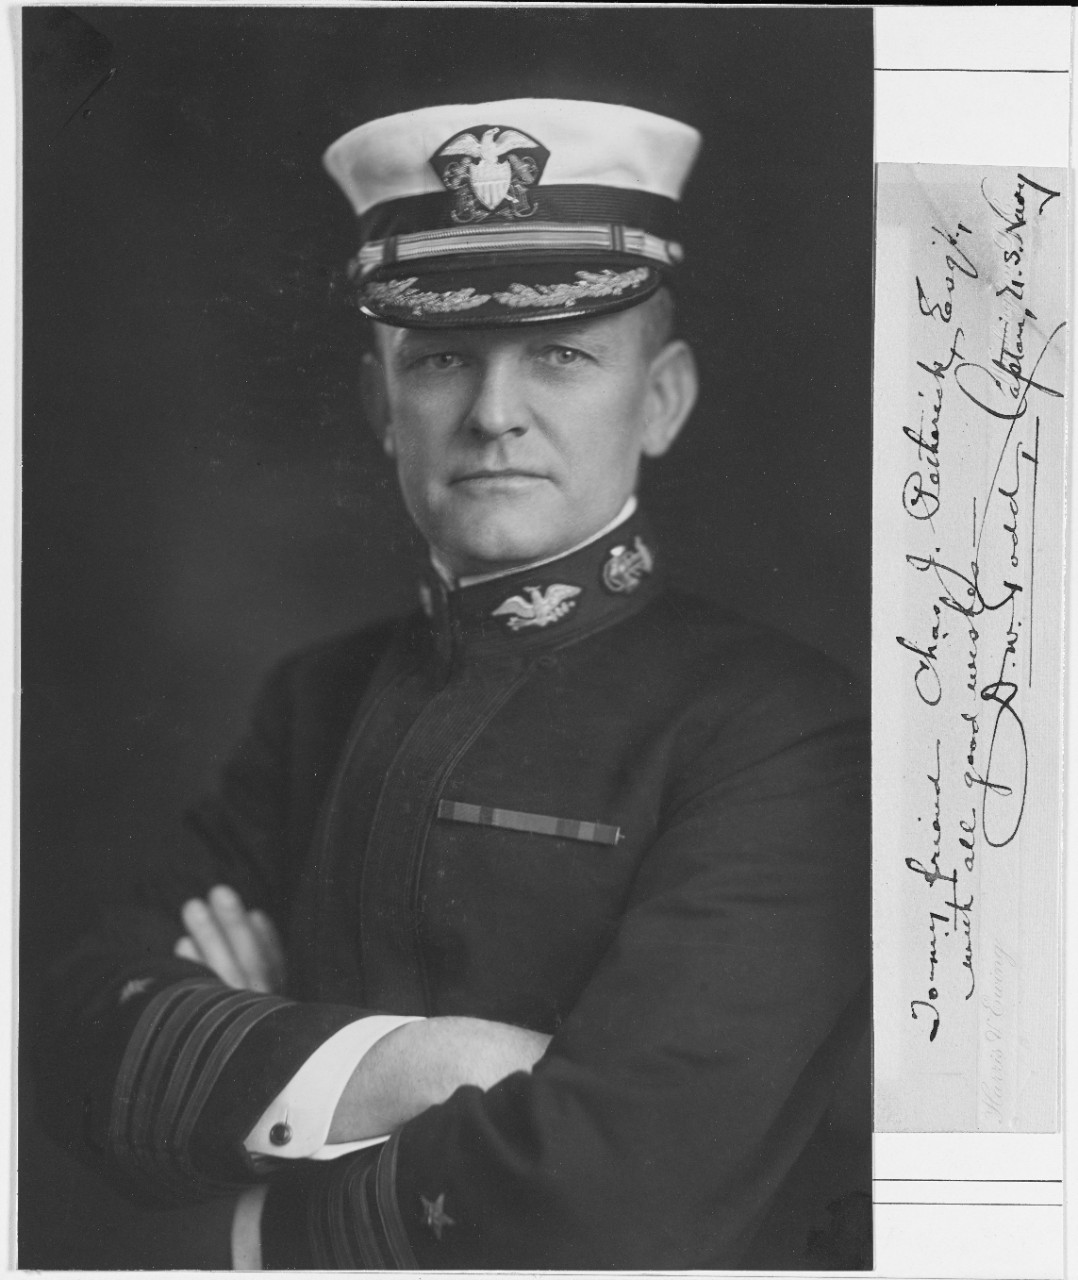 Captain David W. Todd, USN